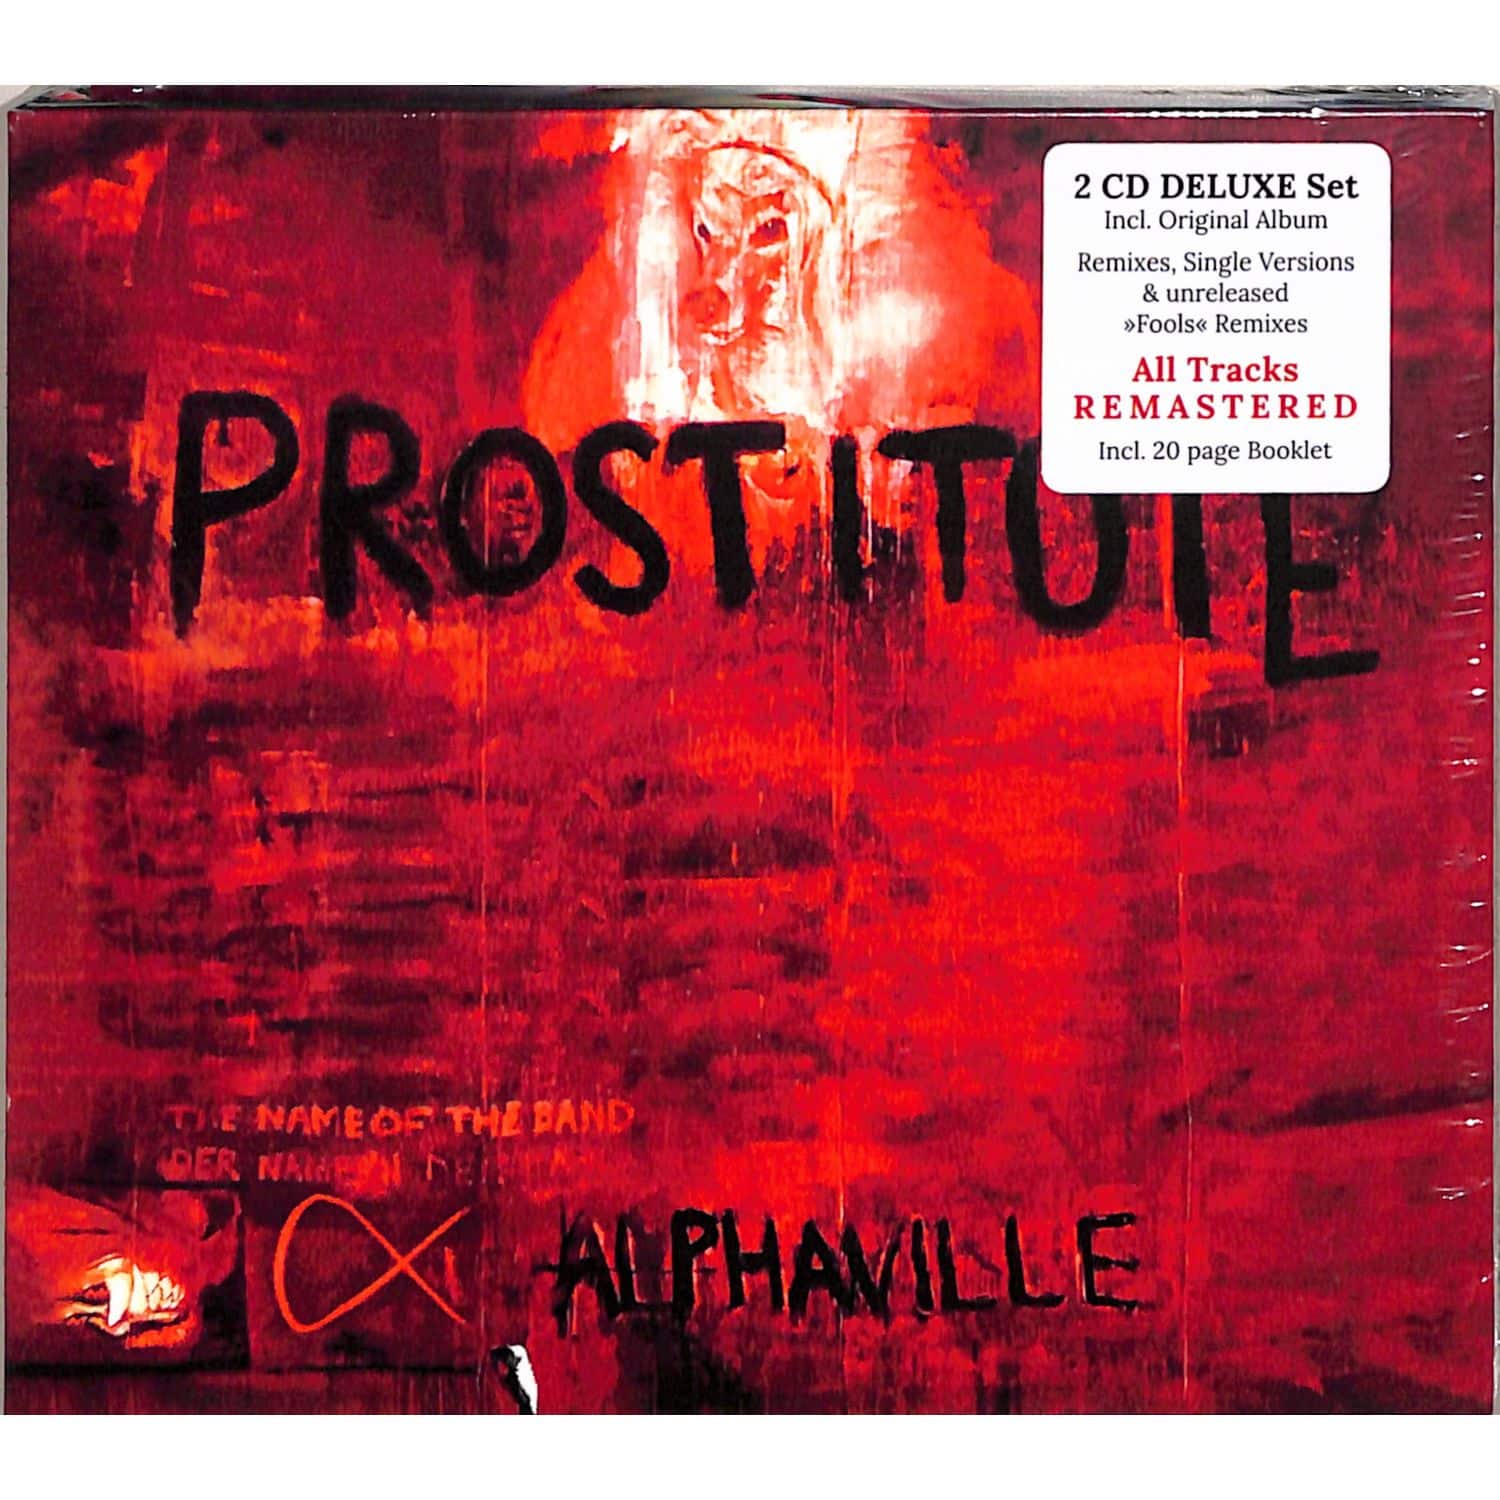 Alphaville - PROSTITUTE 